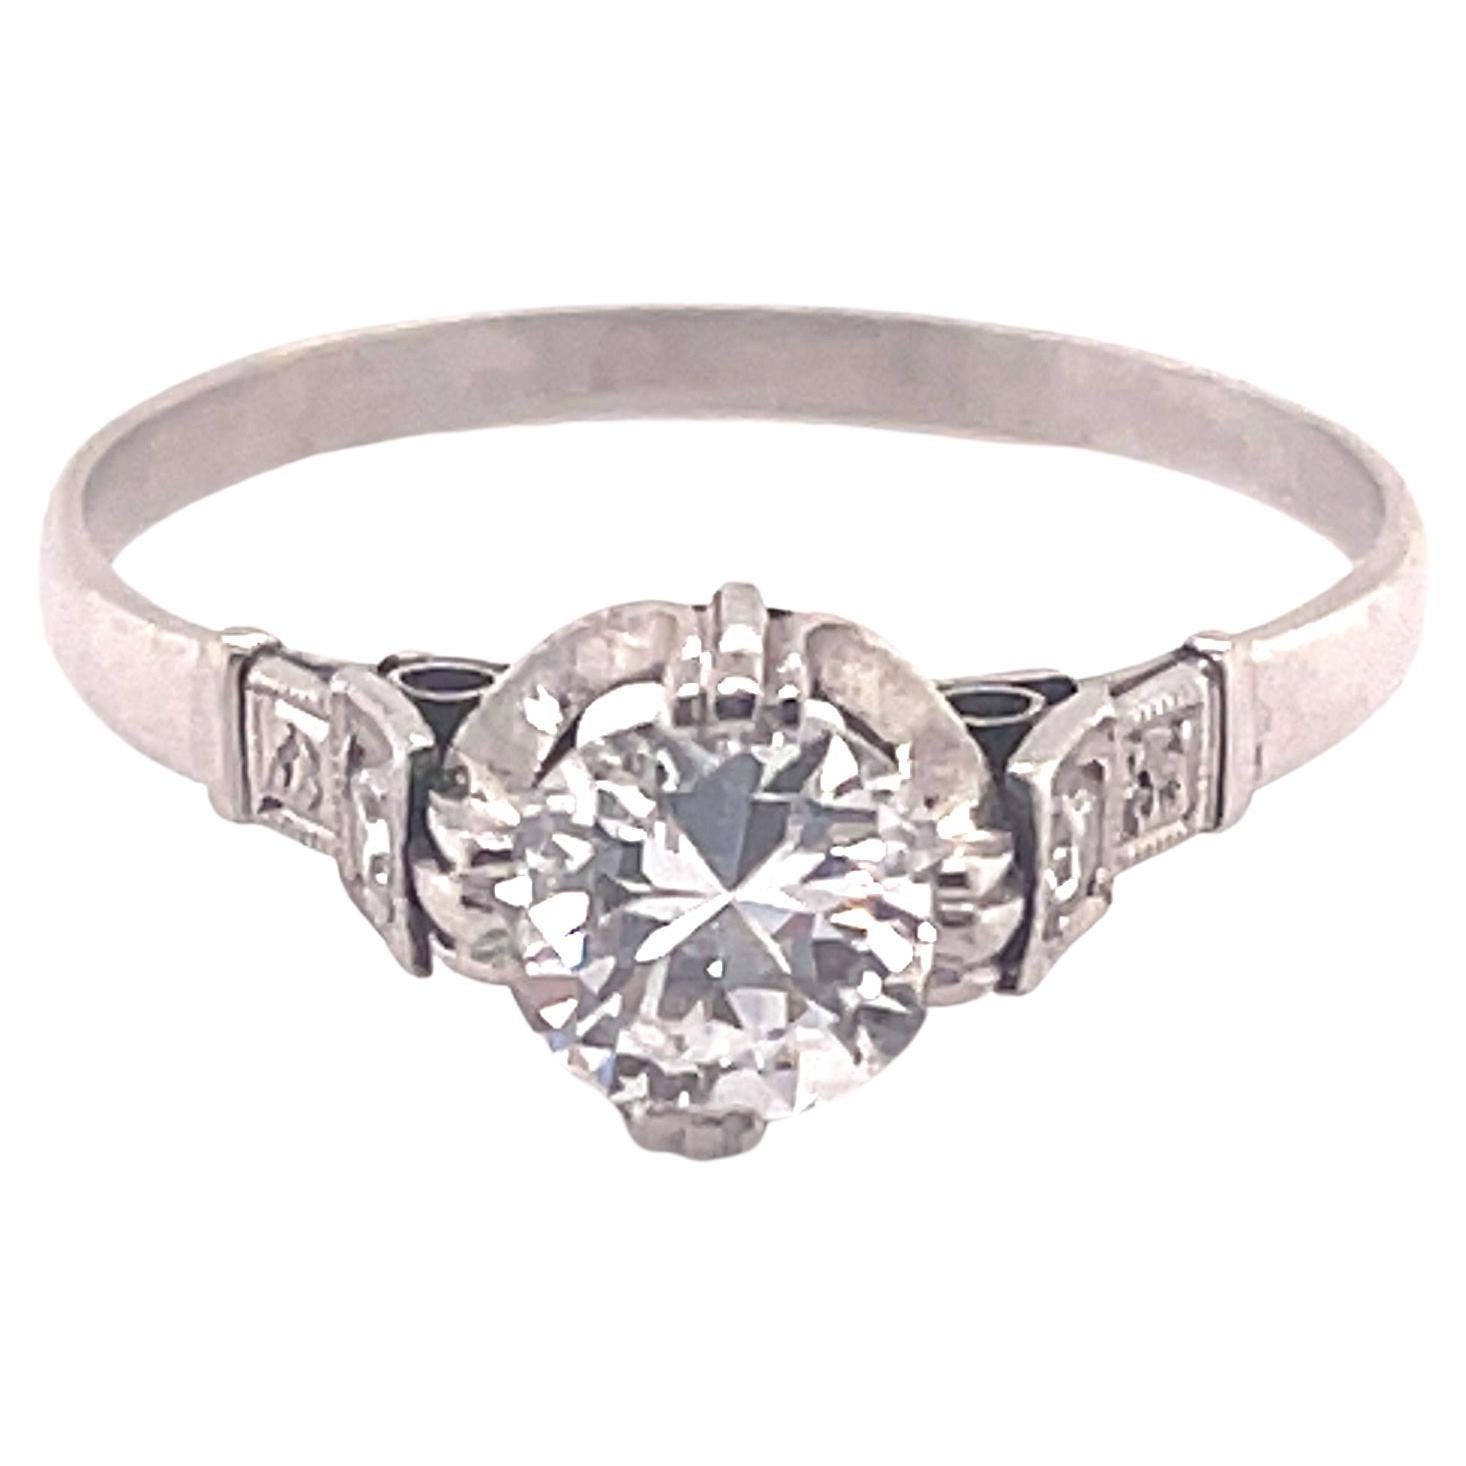 Antique Platinum Diamond Engagement Ring 0.65 ctw